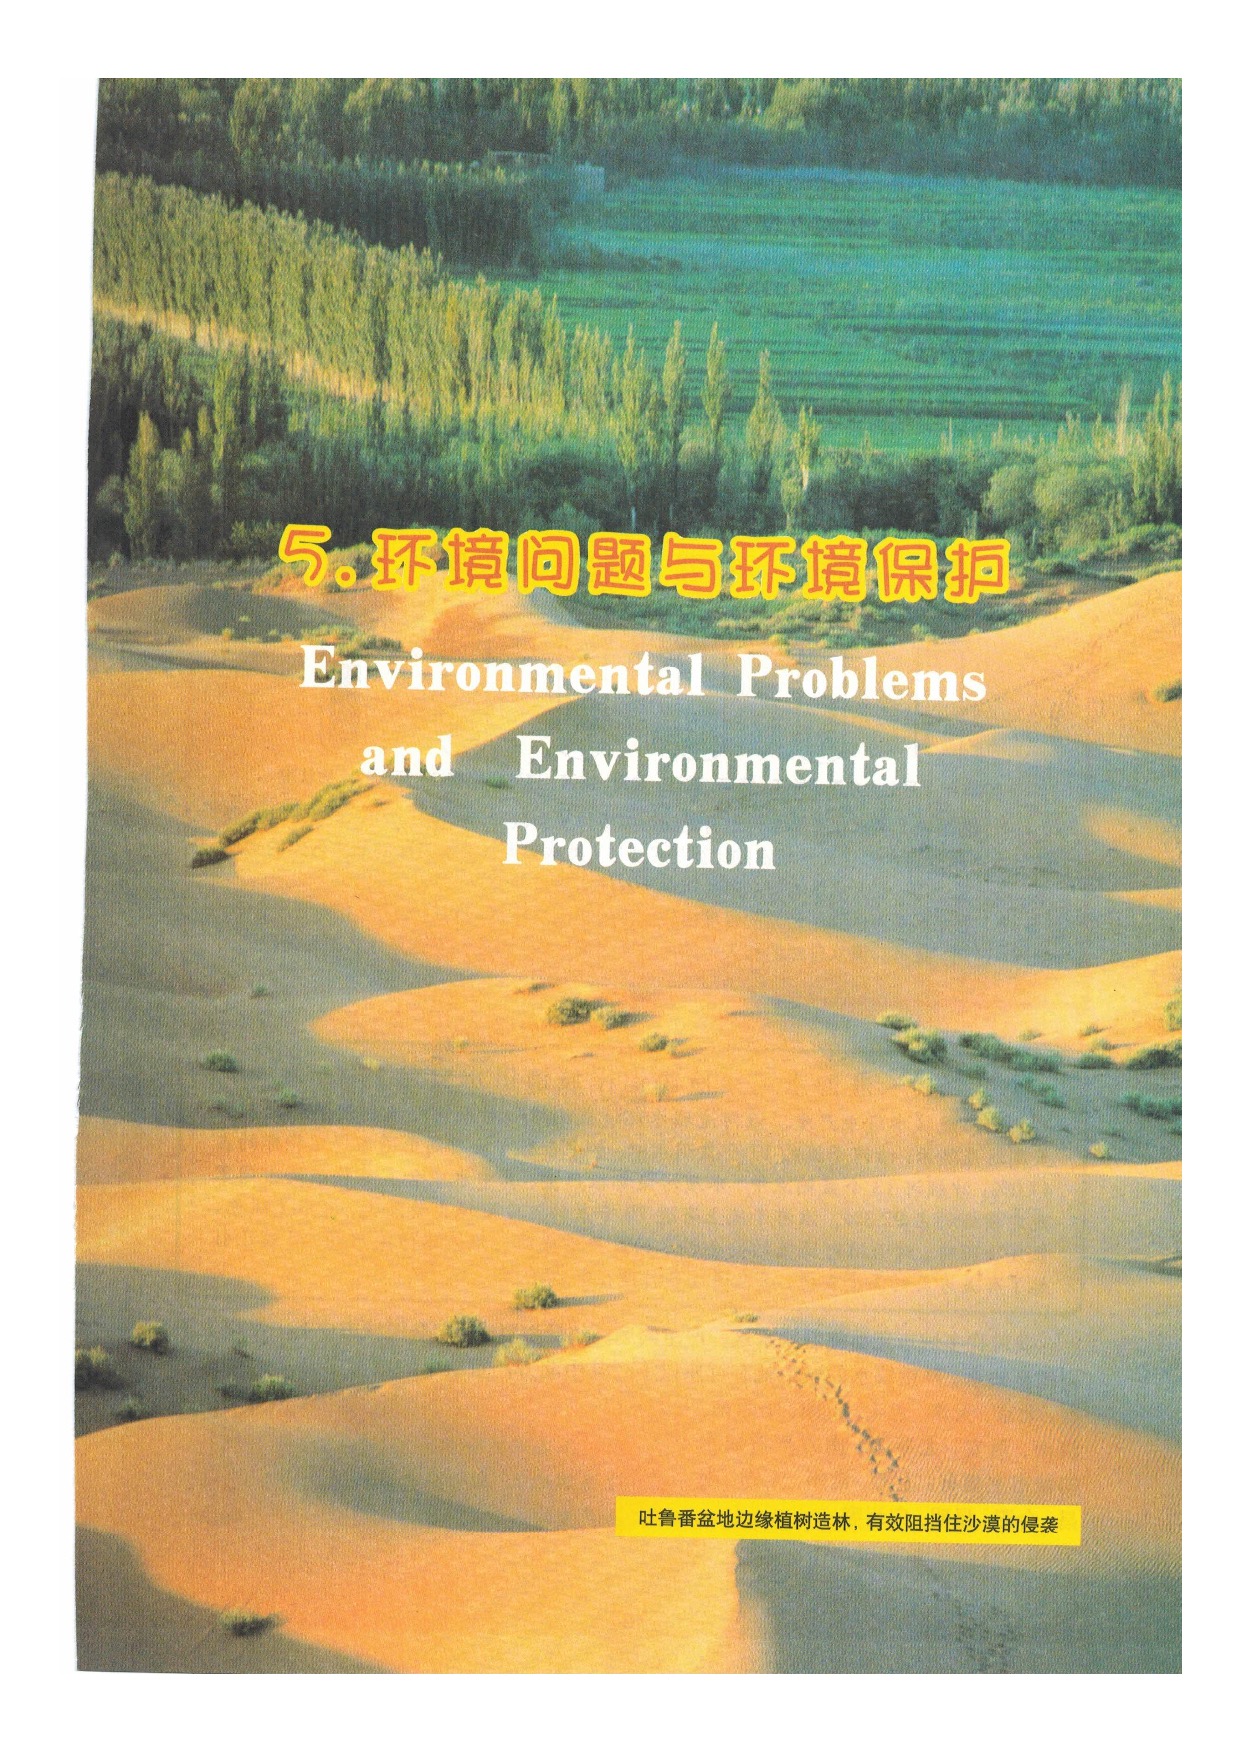 「5」. 环境问题与环境保护